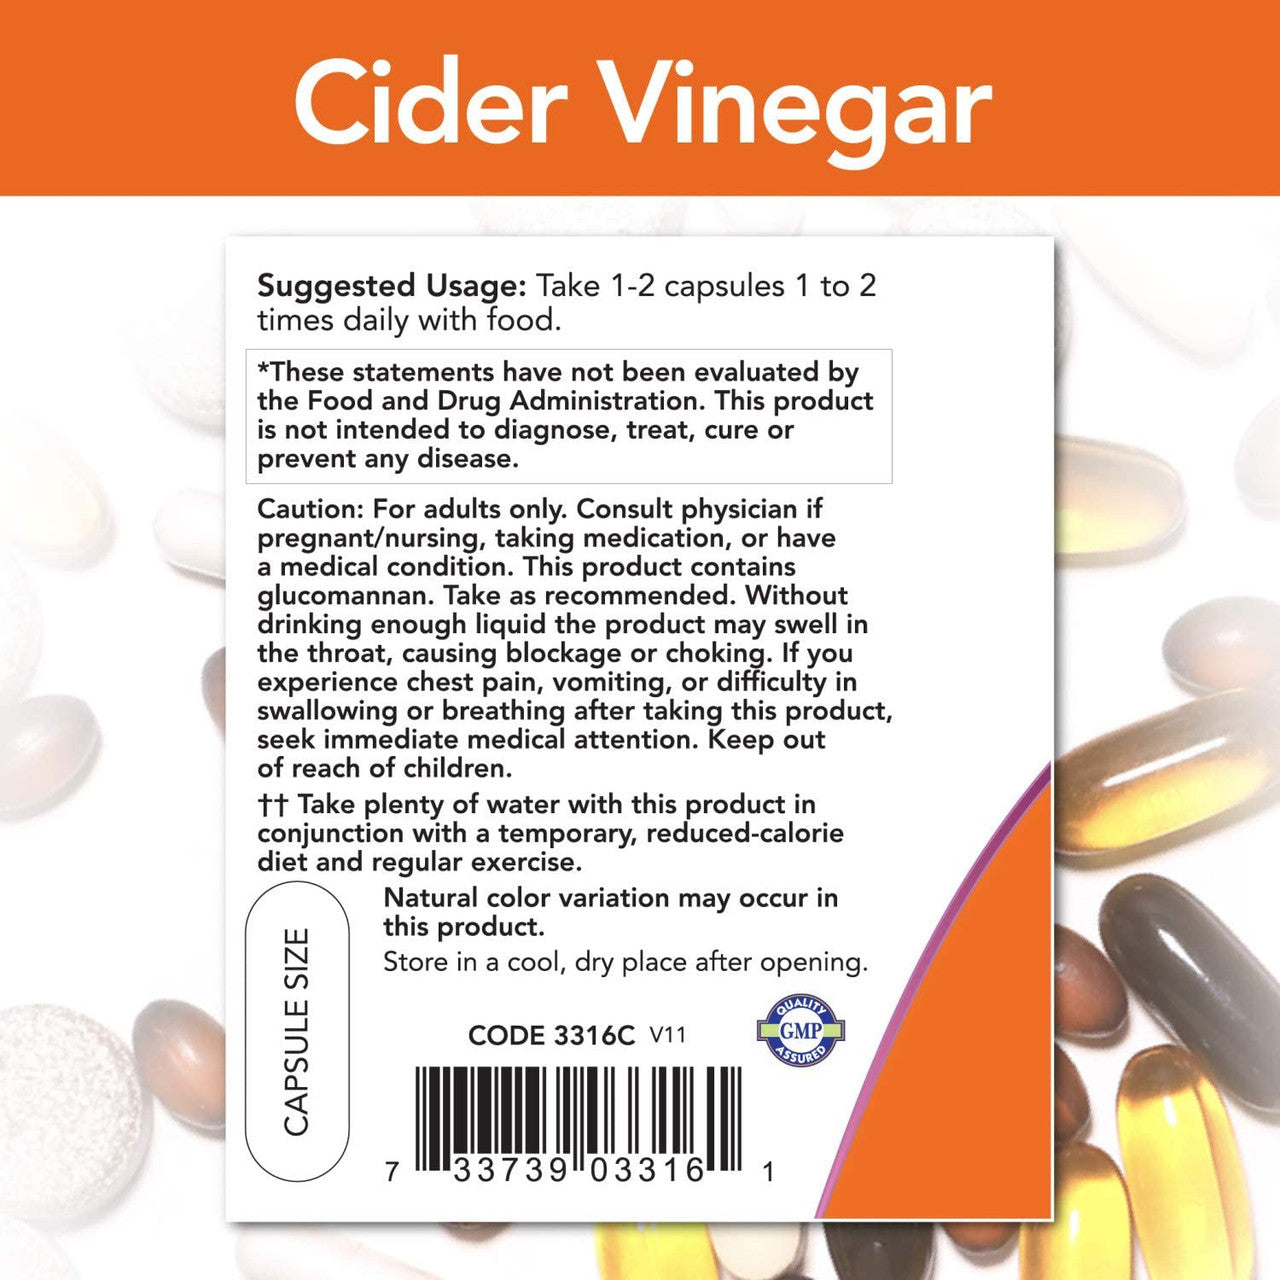 Now Cider Vinegar Diet directions